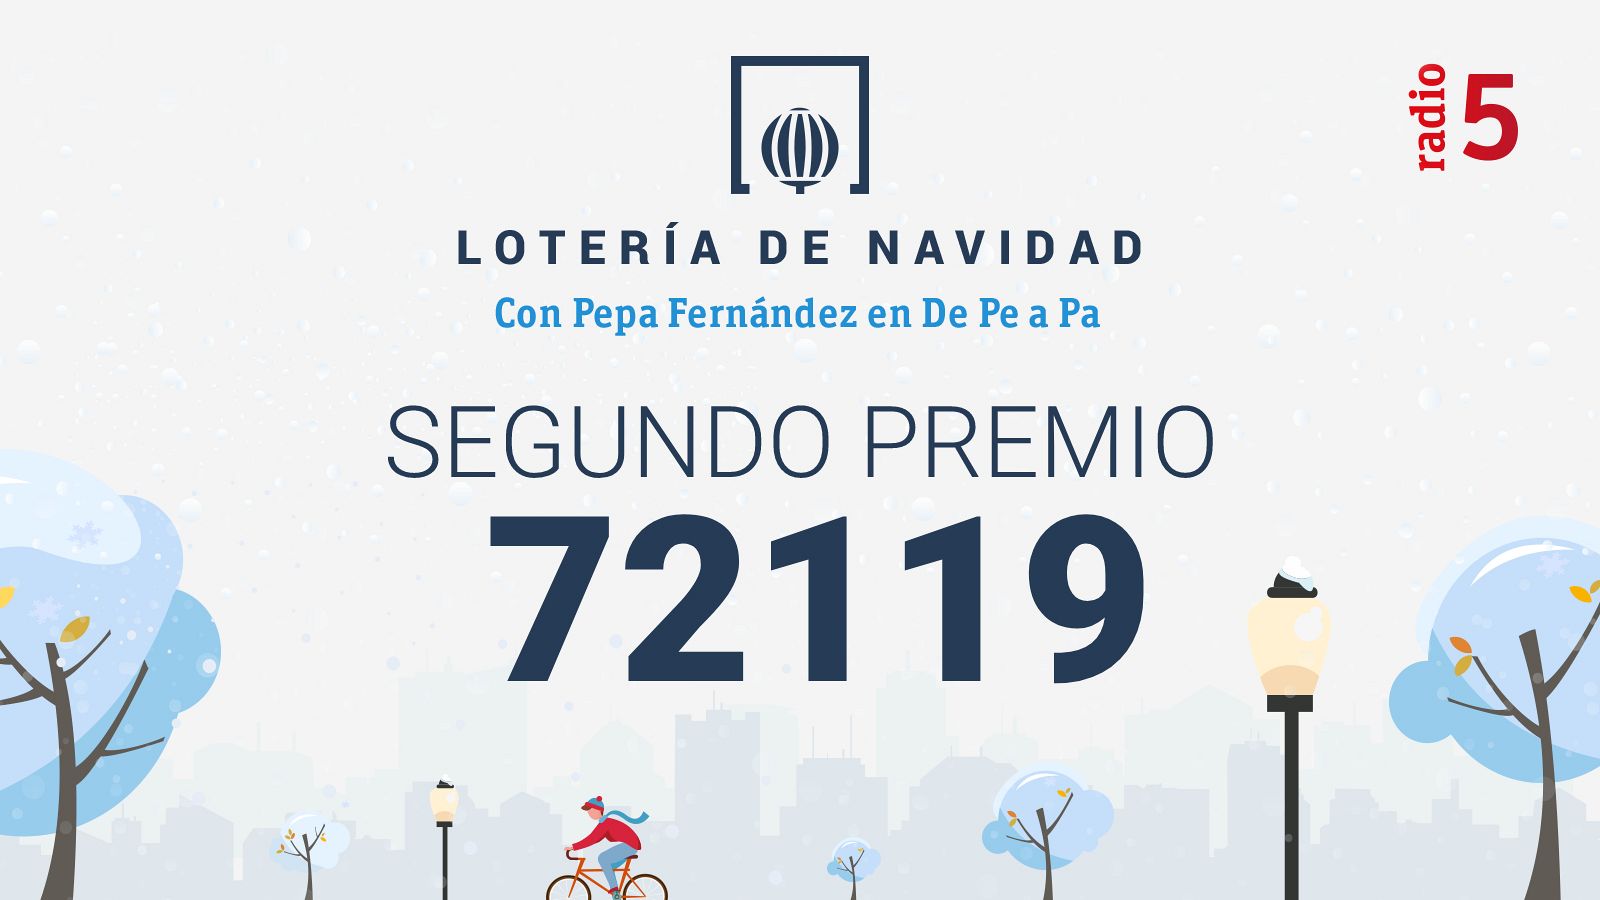 Las mañanas de RNE con Pepa Fernández - 72.119, segundo premio de la Lotería de Navidad 2021 - Escuchar ahora 